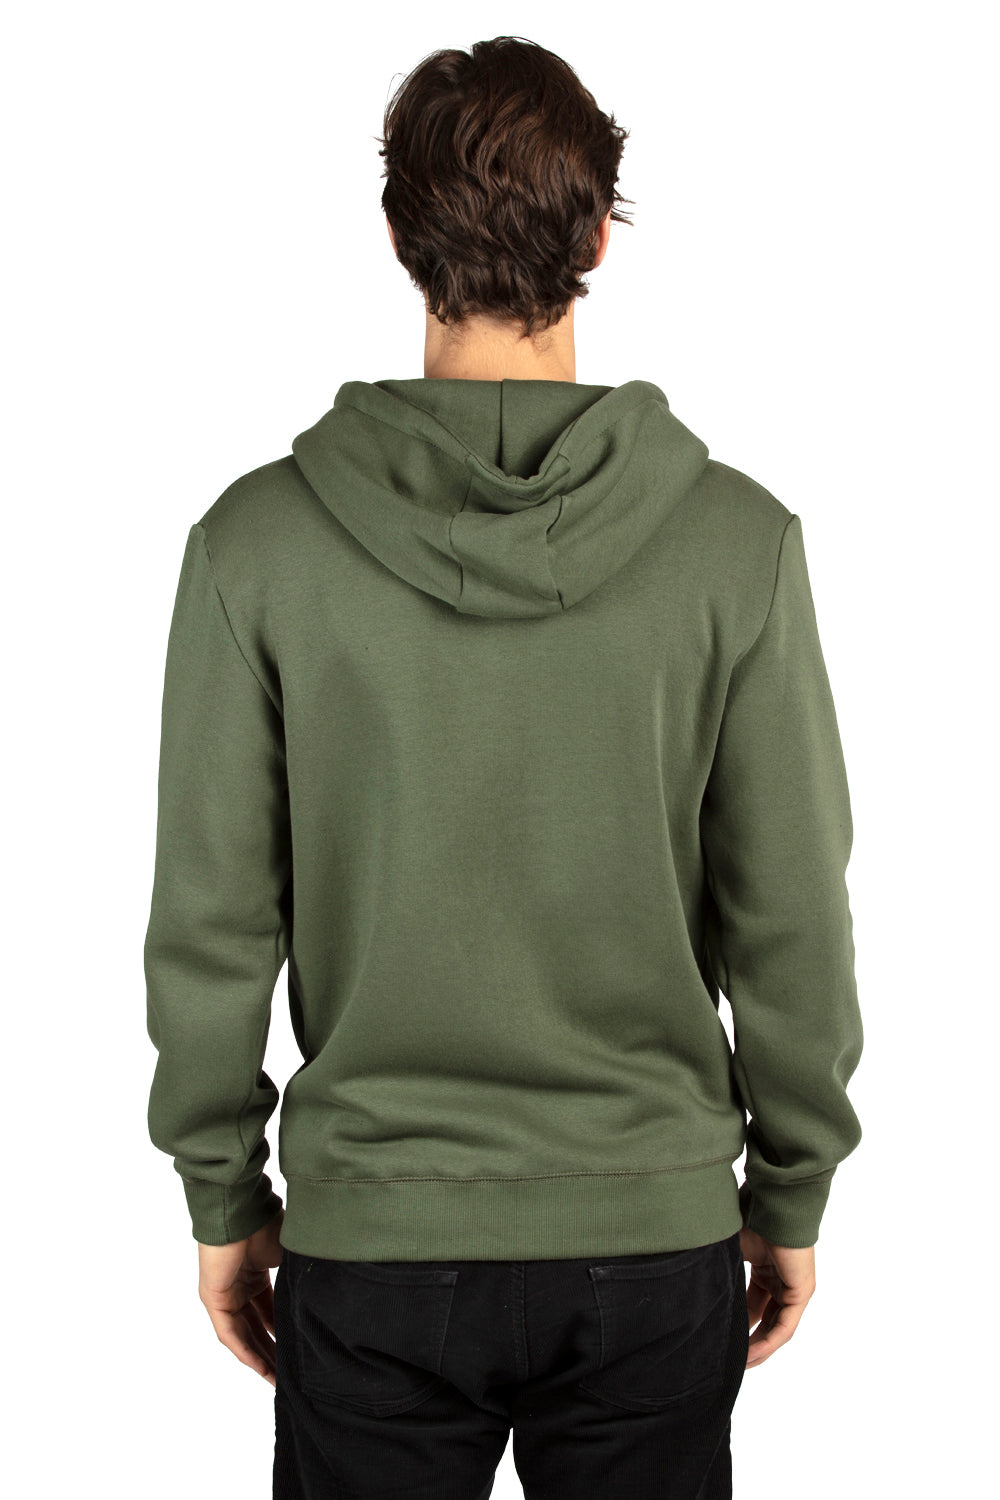 Threadfast Apparel 320Z Mens Ultimate Fleece Full Zip Hooded Sweatshirt Hoodie Army Green Back